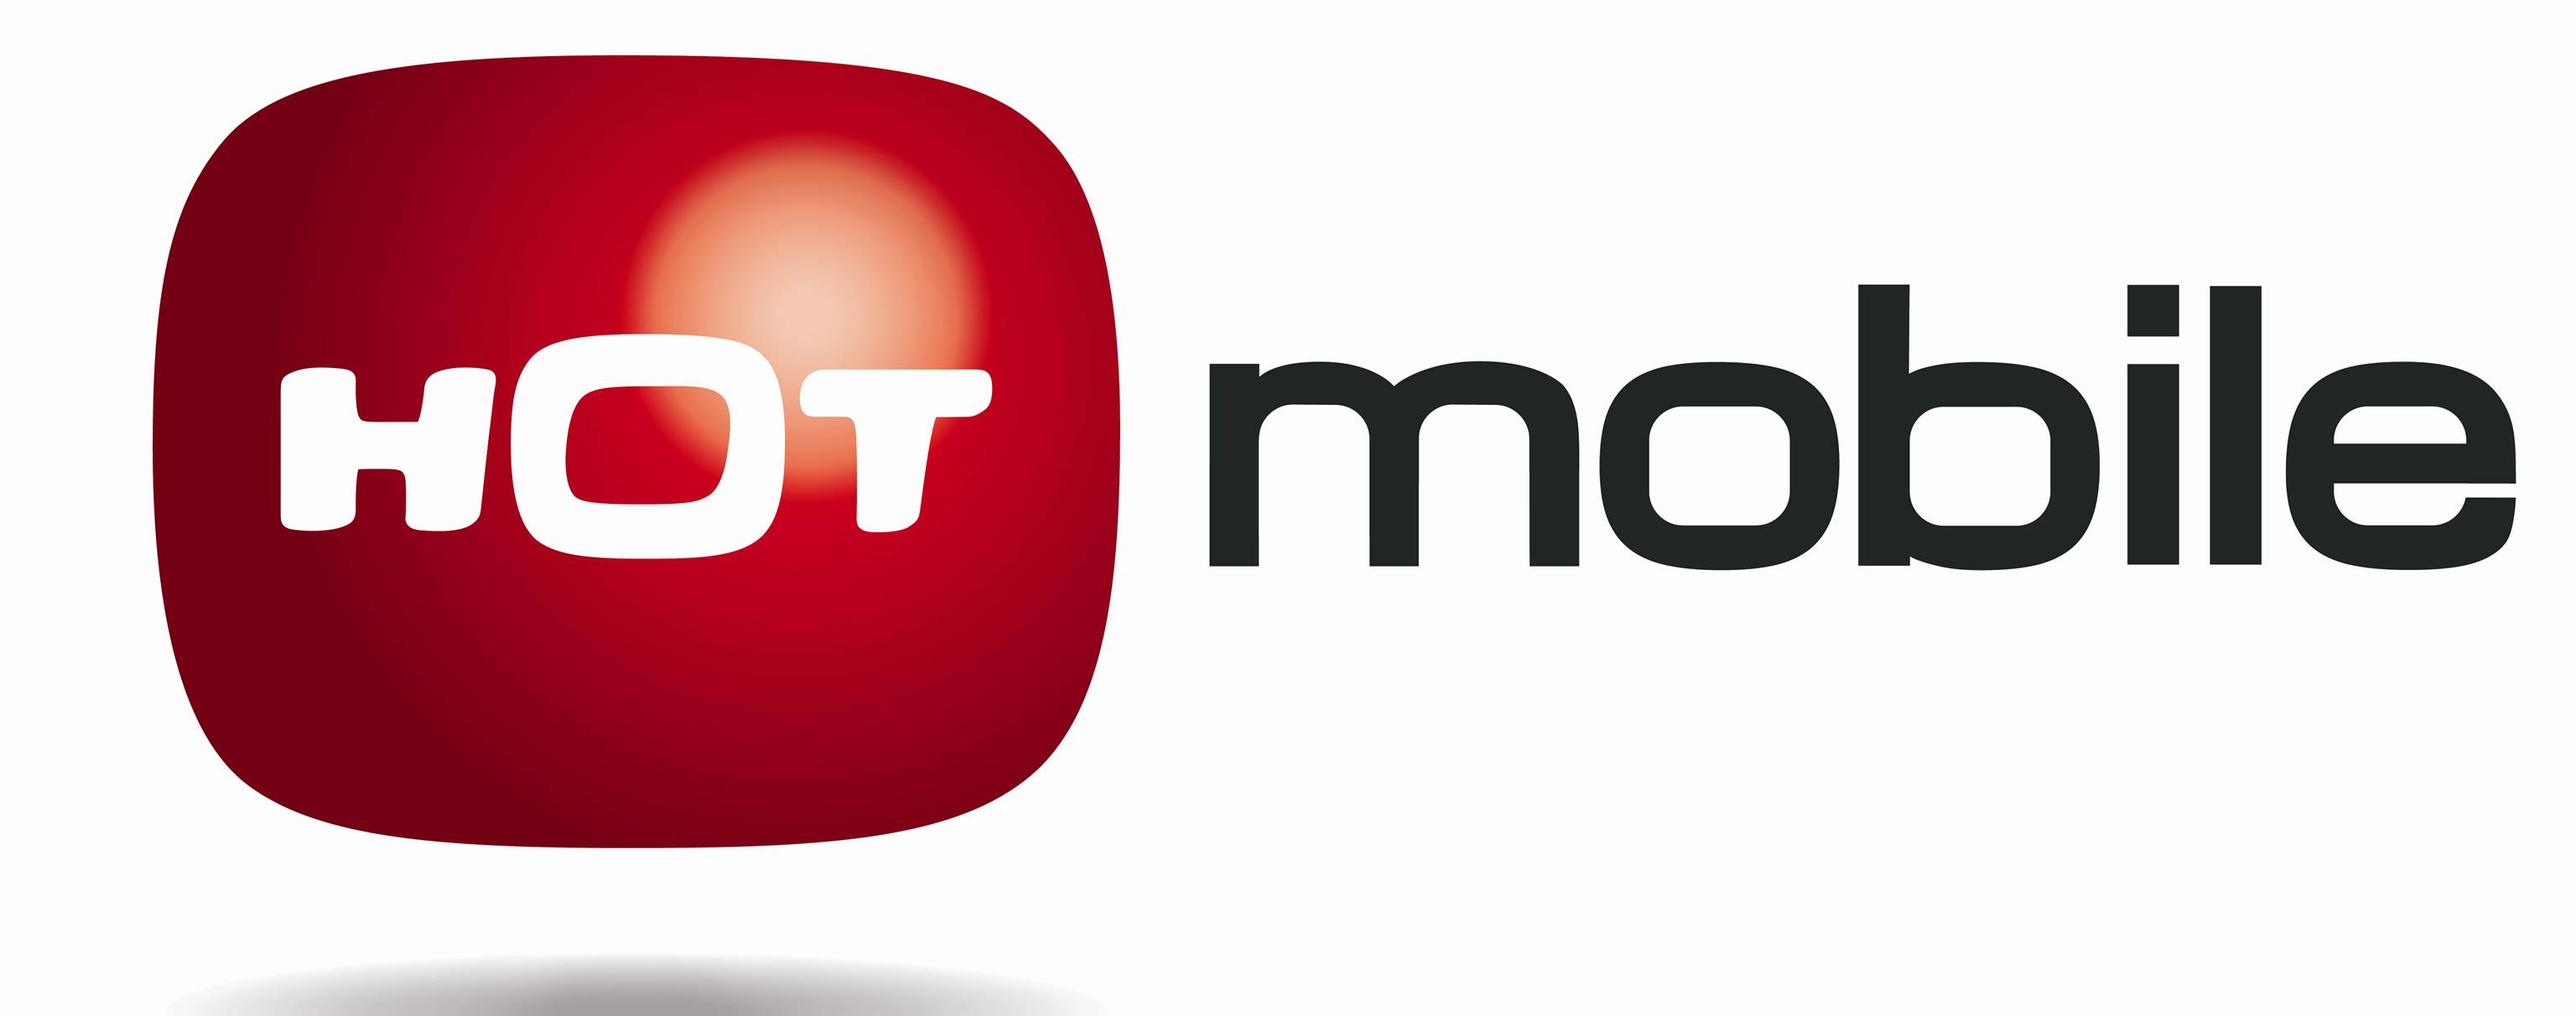 HOT Mobile приглашает клиентов Golan Telecom